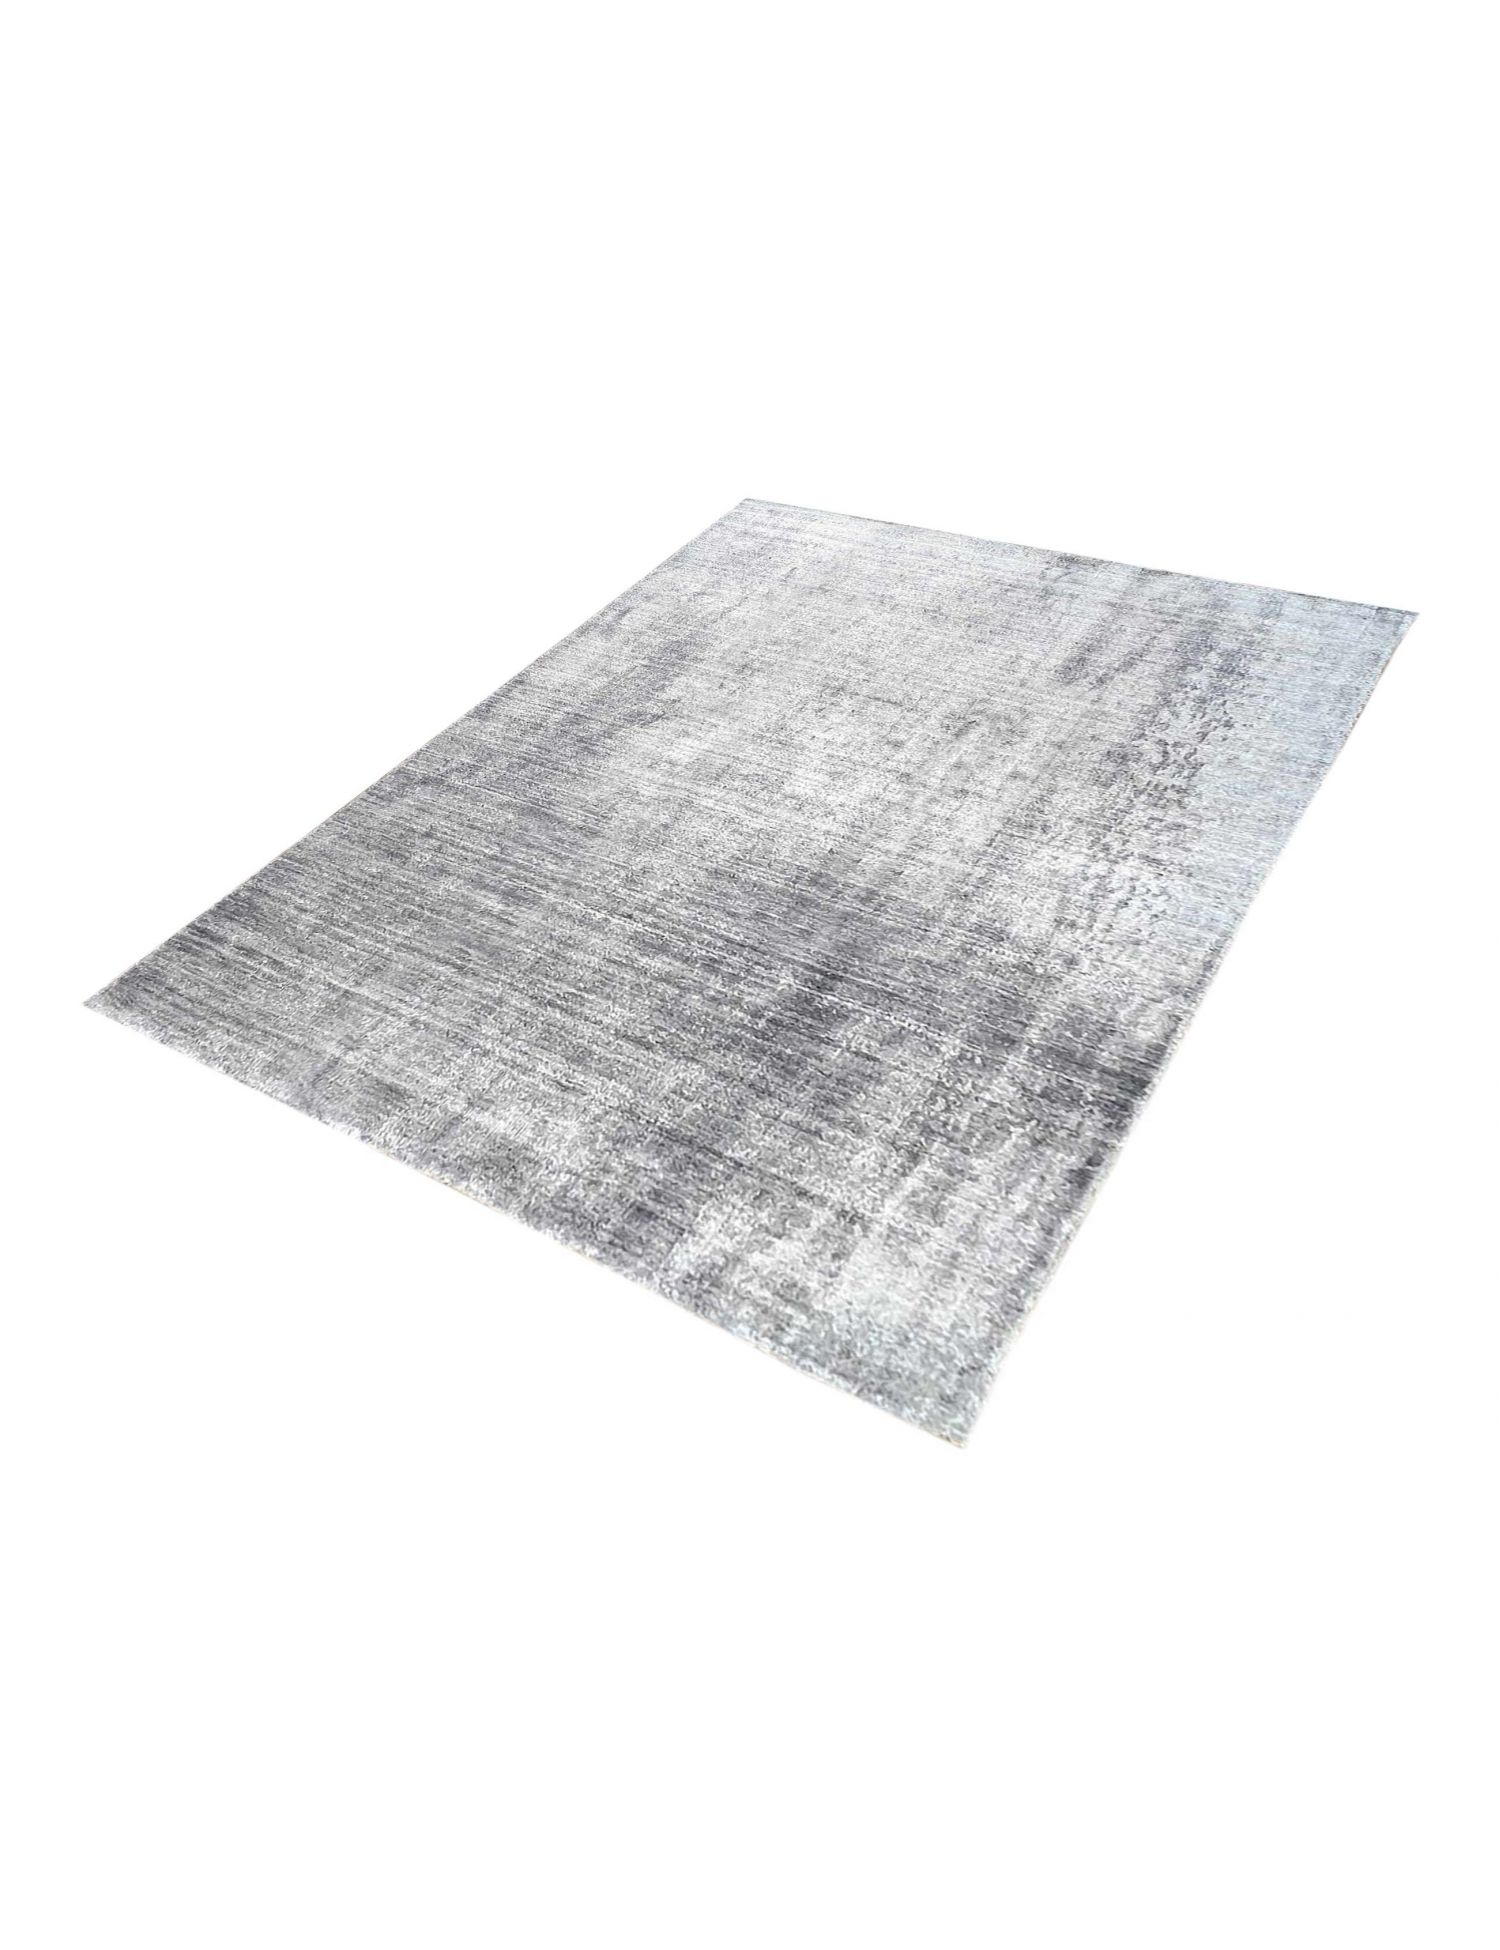 Indian Carpet  grigo <br/>240 x 170 cm